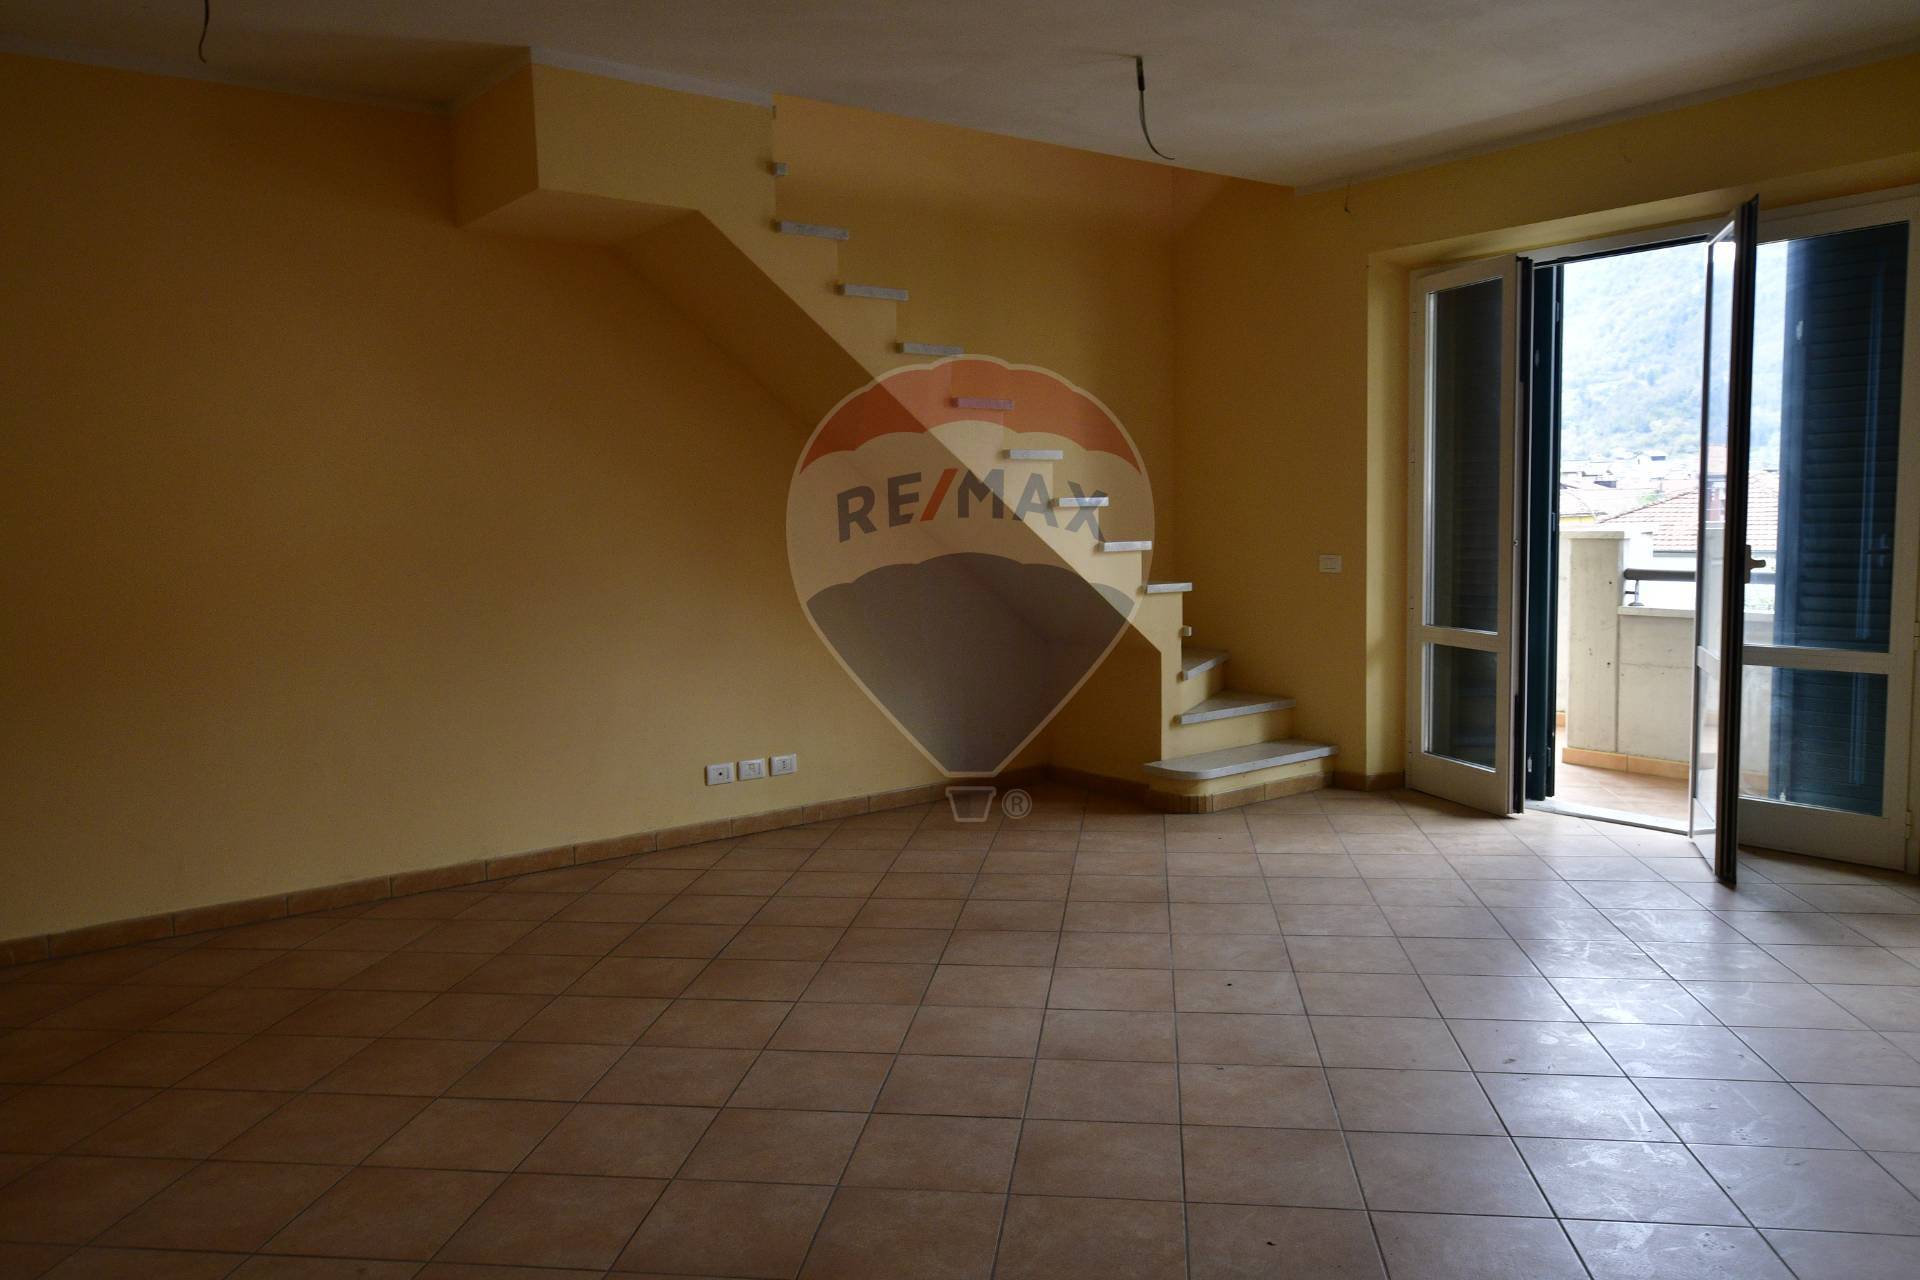 Appartamento in vendita a Barga, 3 locali, zona Località: FornacidiBarga, prezzo € 175.000 | CambioCasa.it